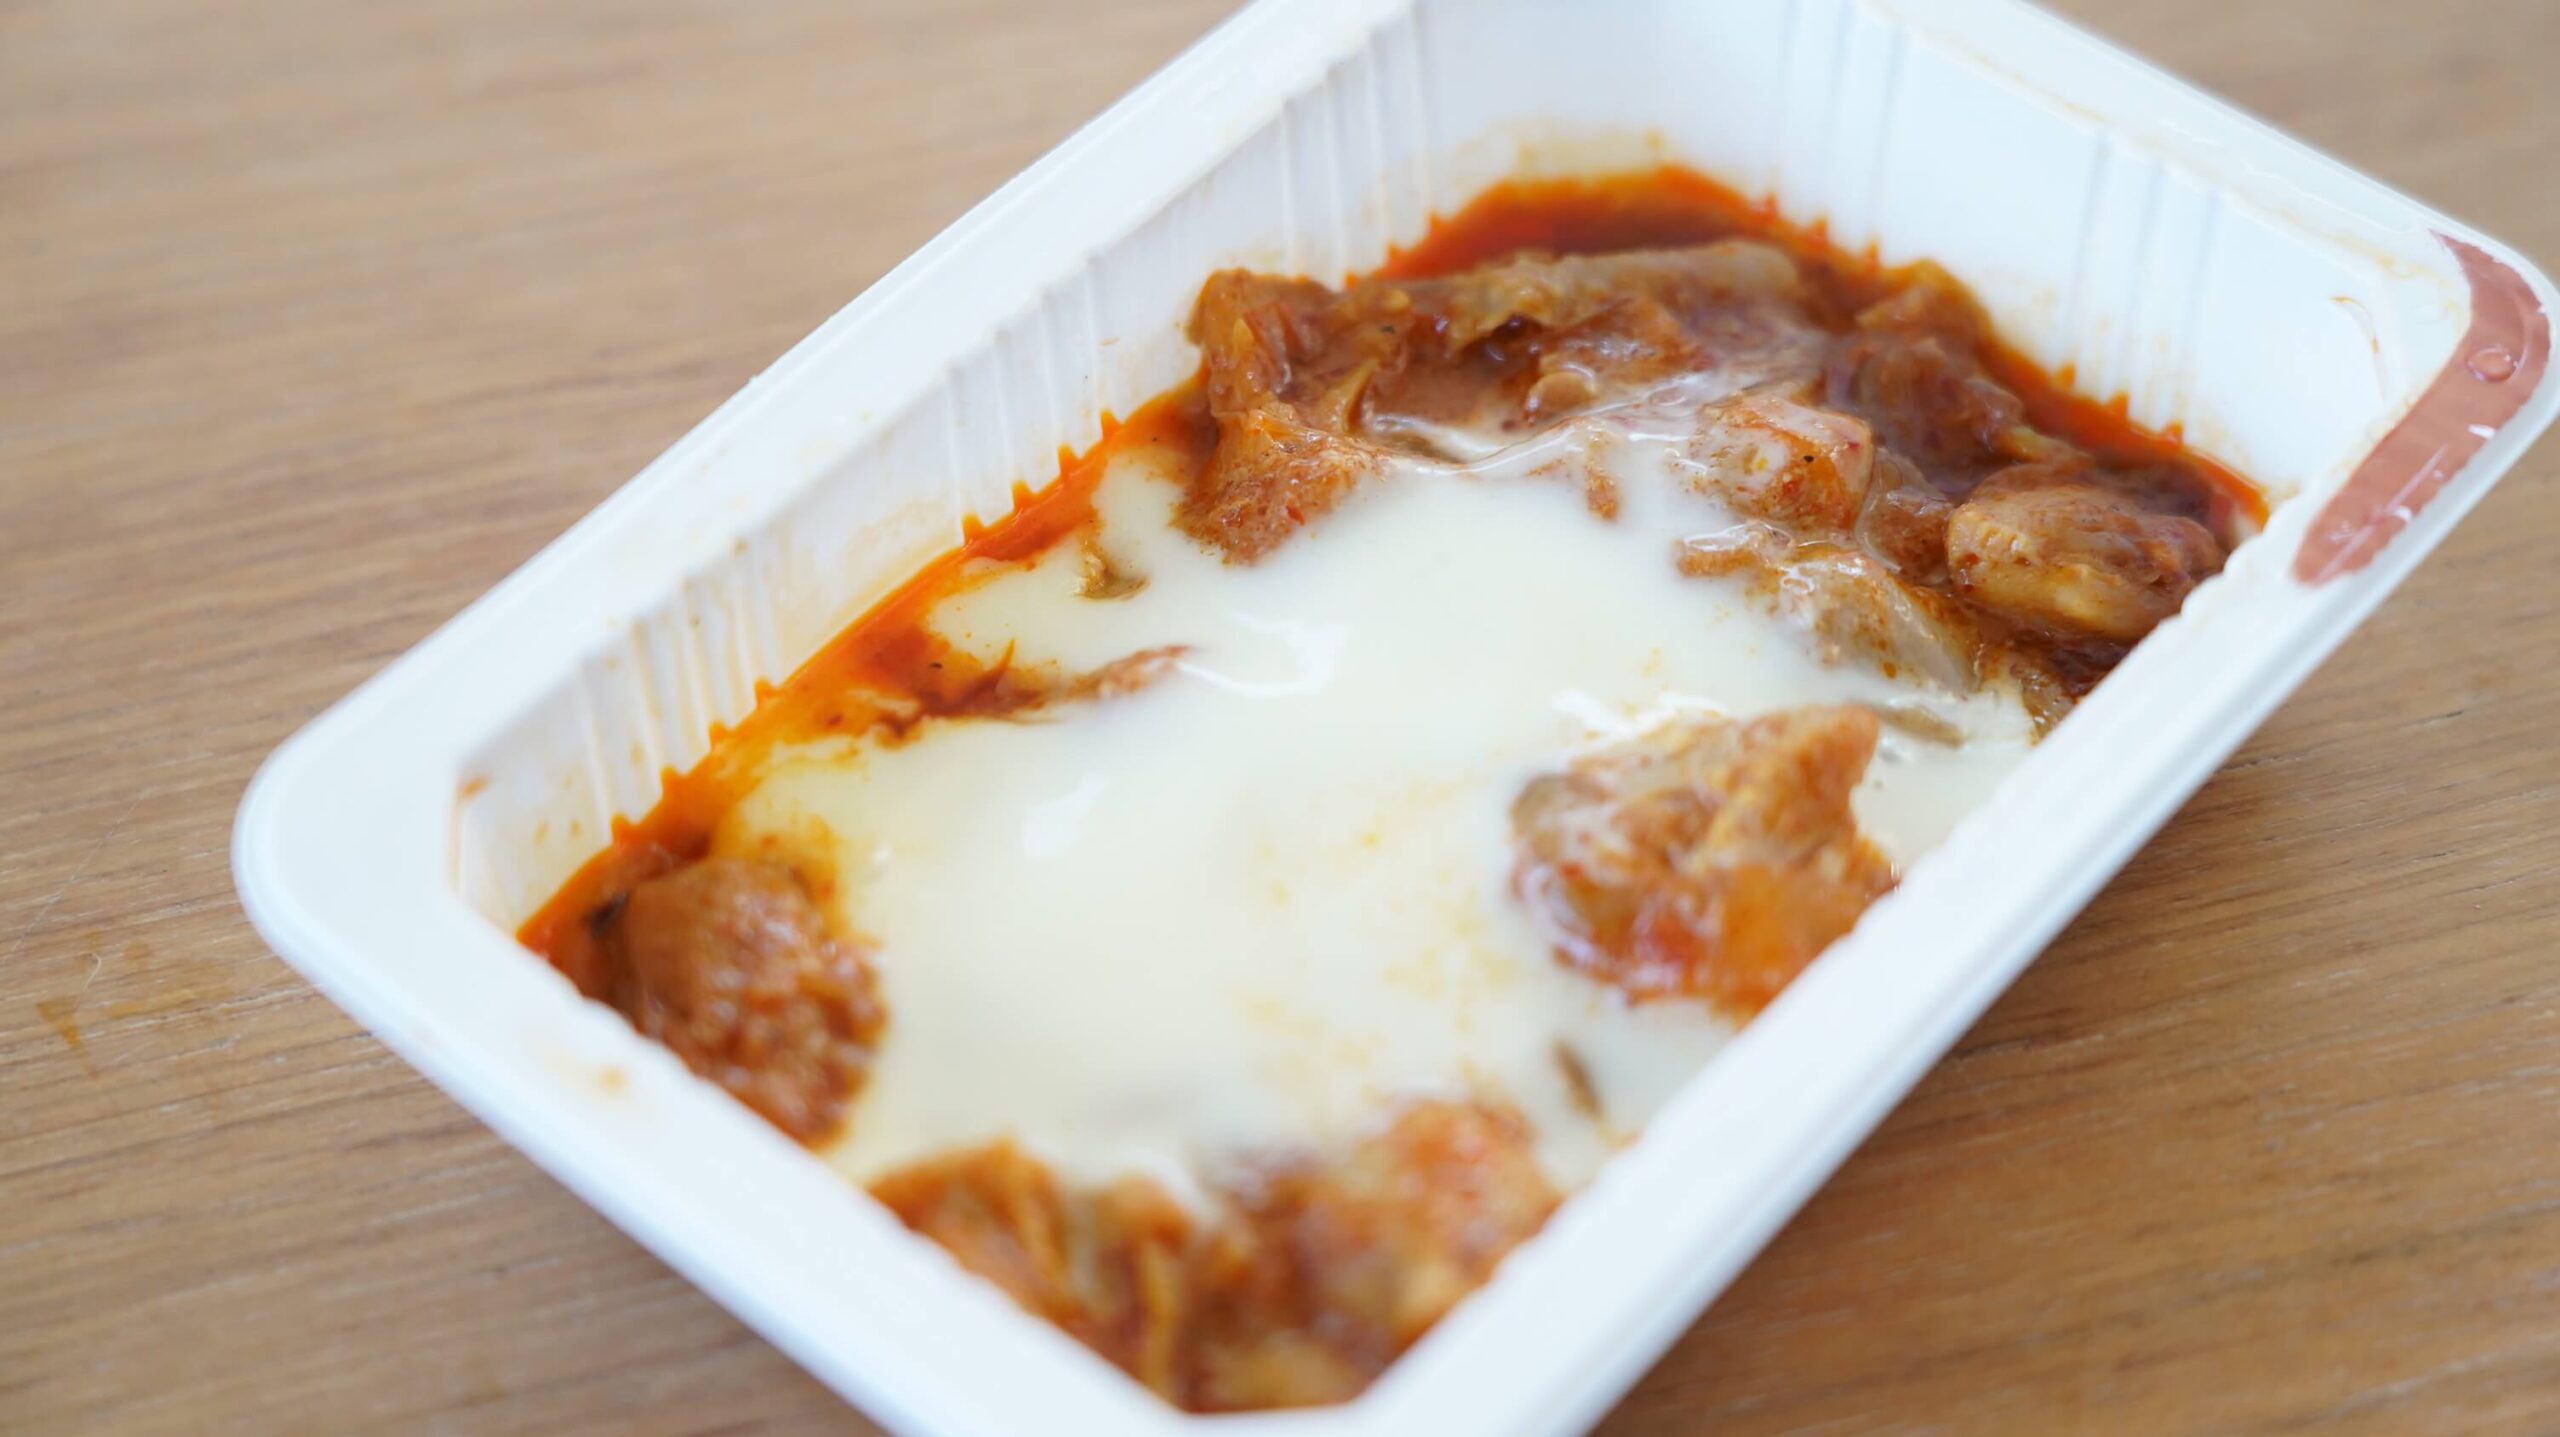 セブンイレブンおすすめ冷凍食品「チーズタッカルビ」を上から撮影した写真